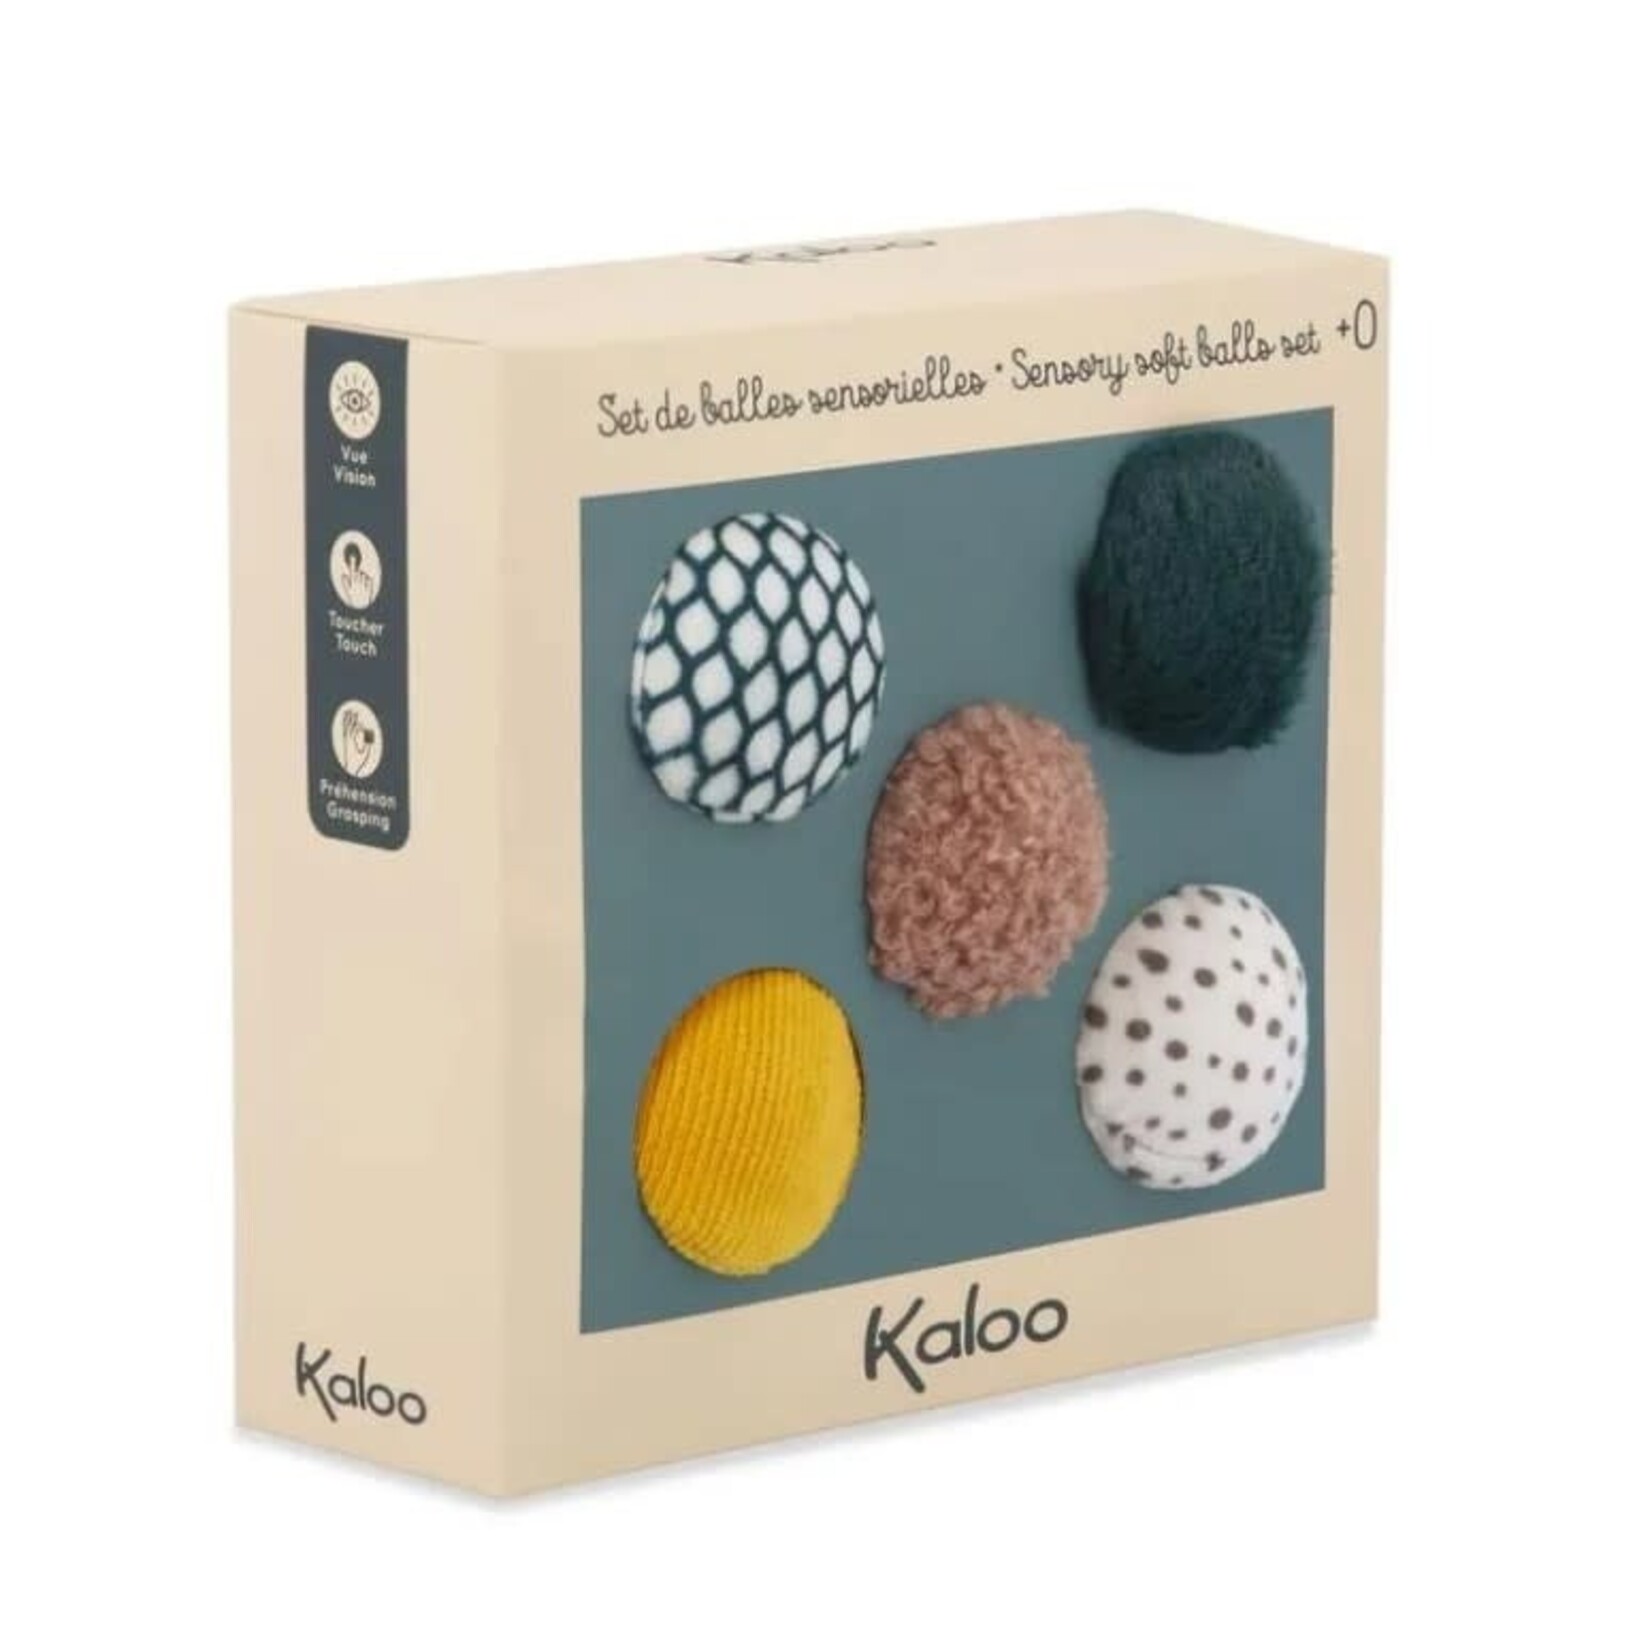 Kaloo KALOO - Sensory soft balls set